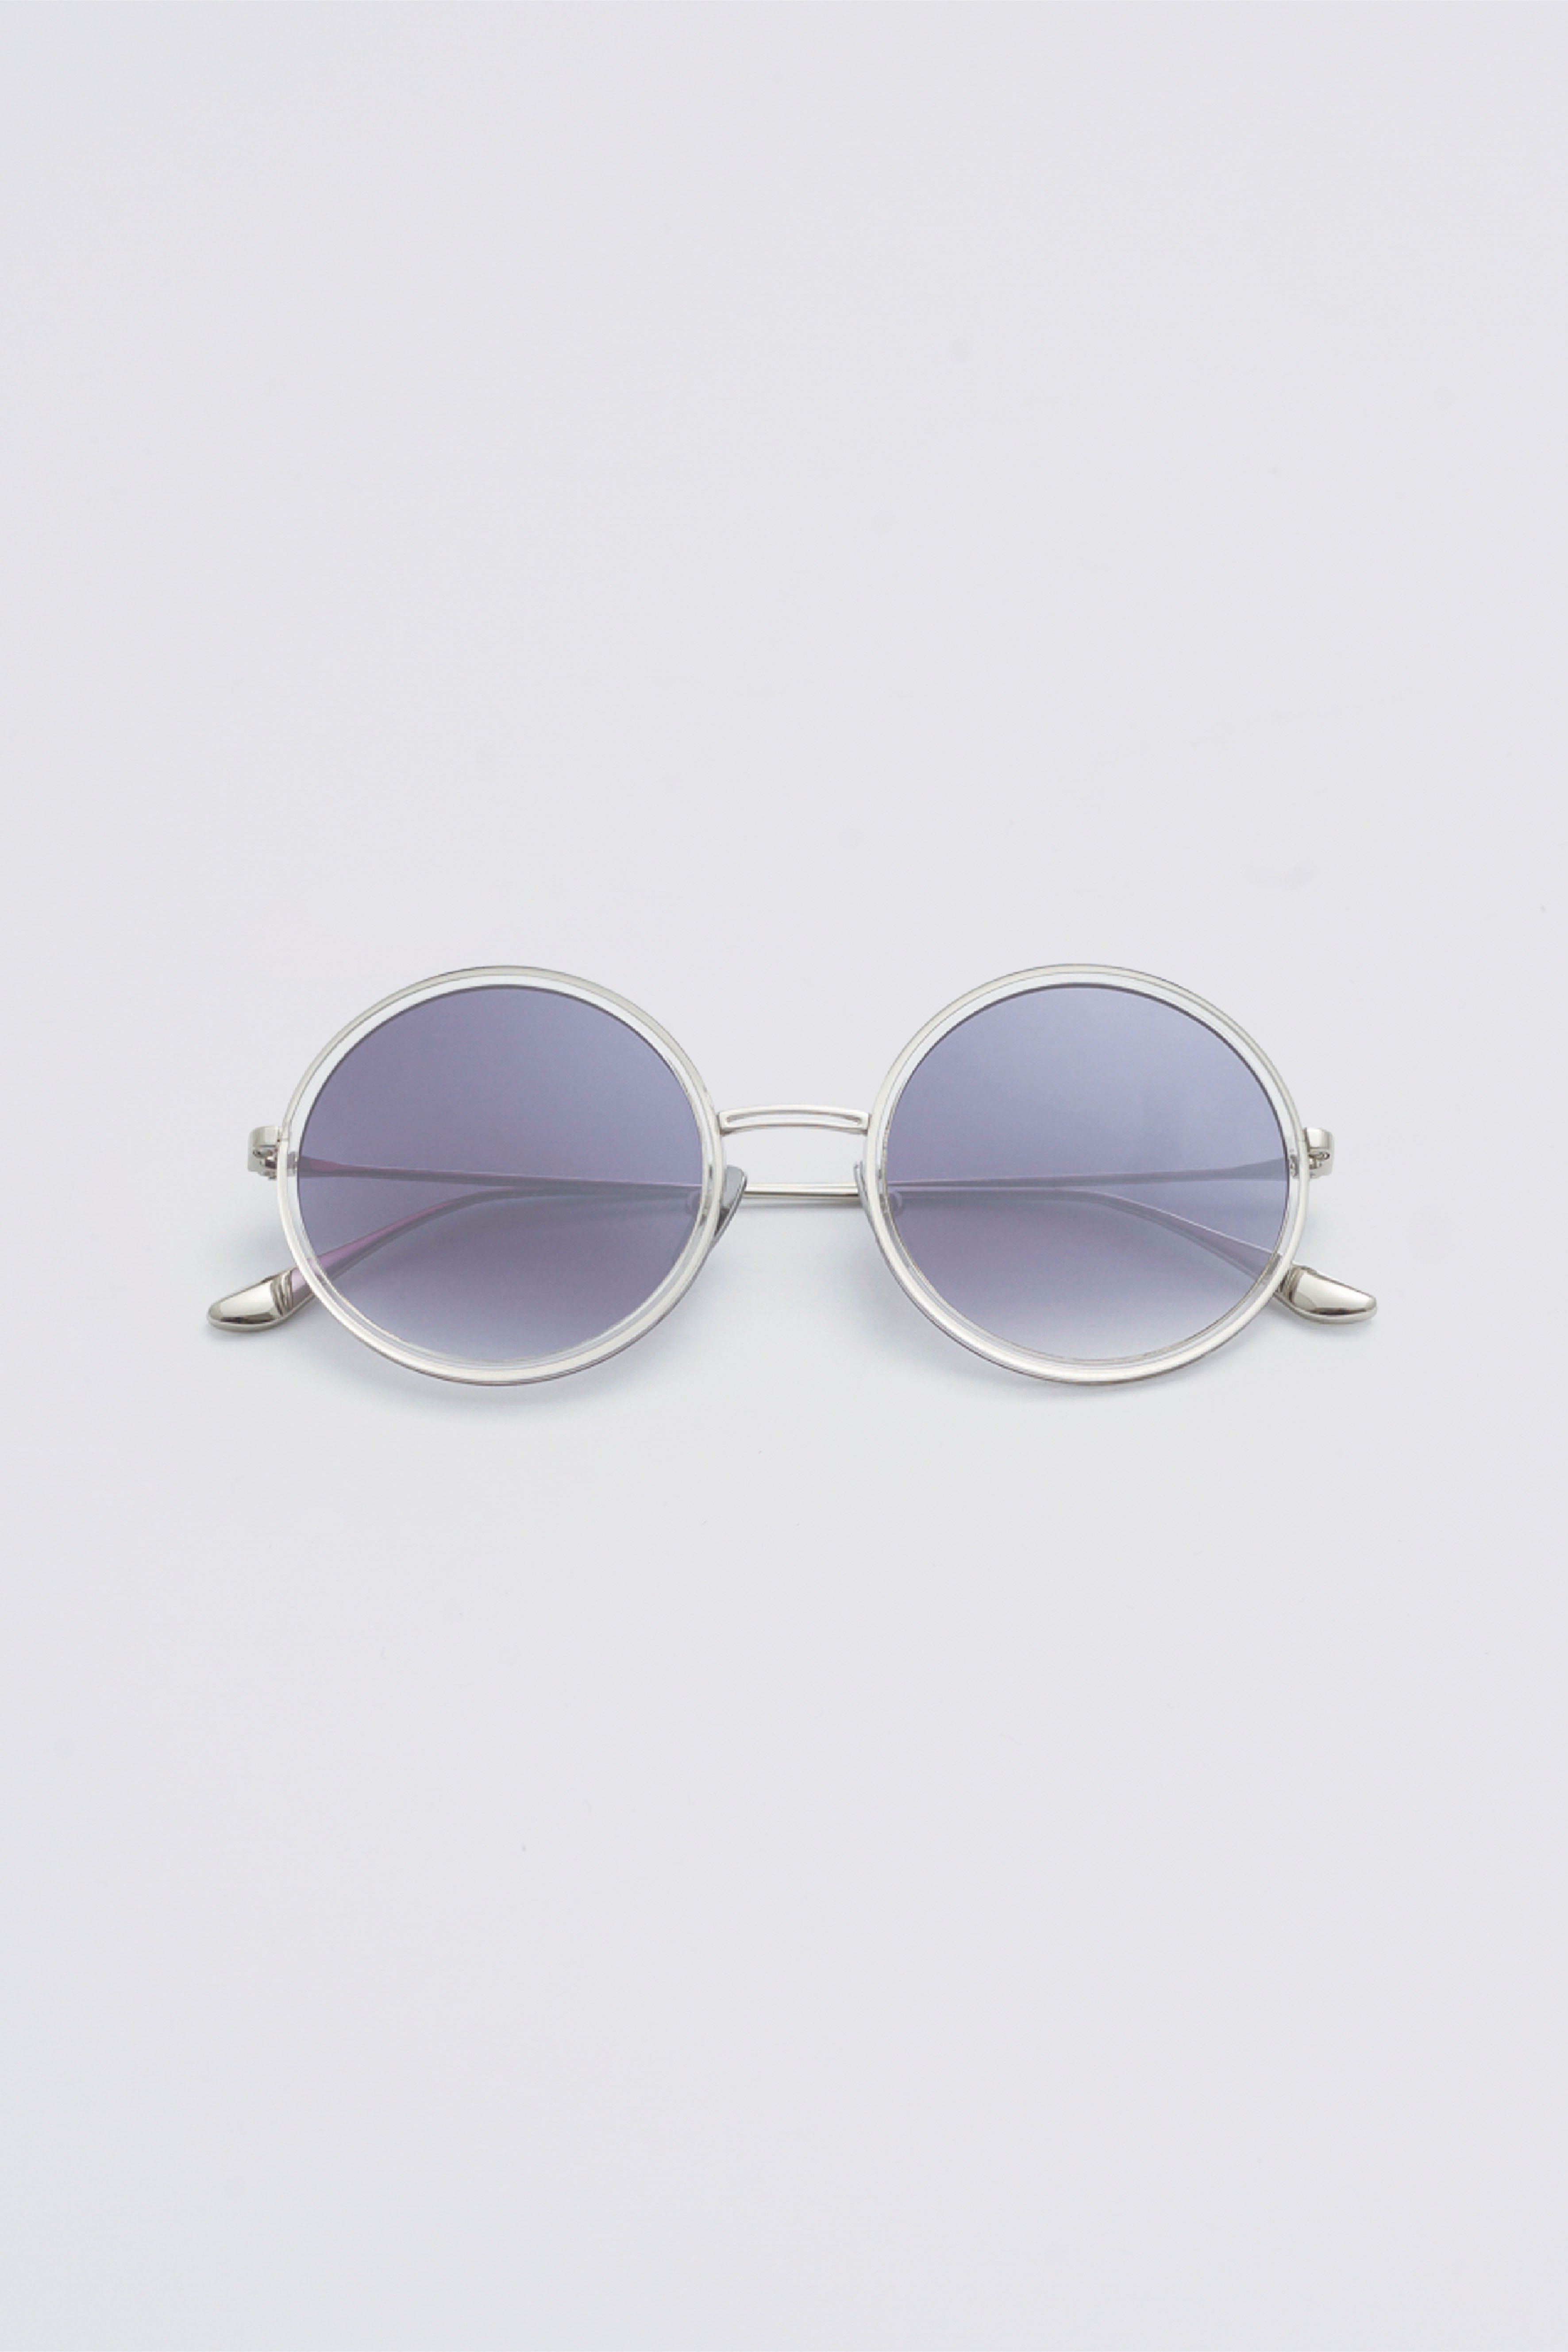 Paabi Sunglasses/925 Sterling Silver/18k Gold -  Hong Kong